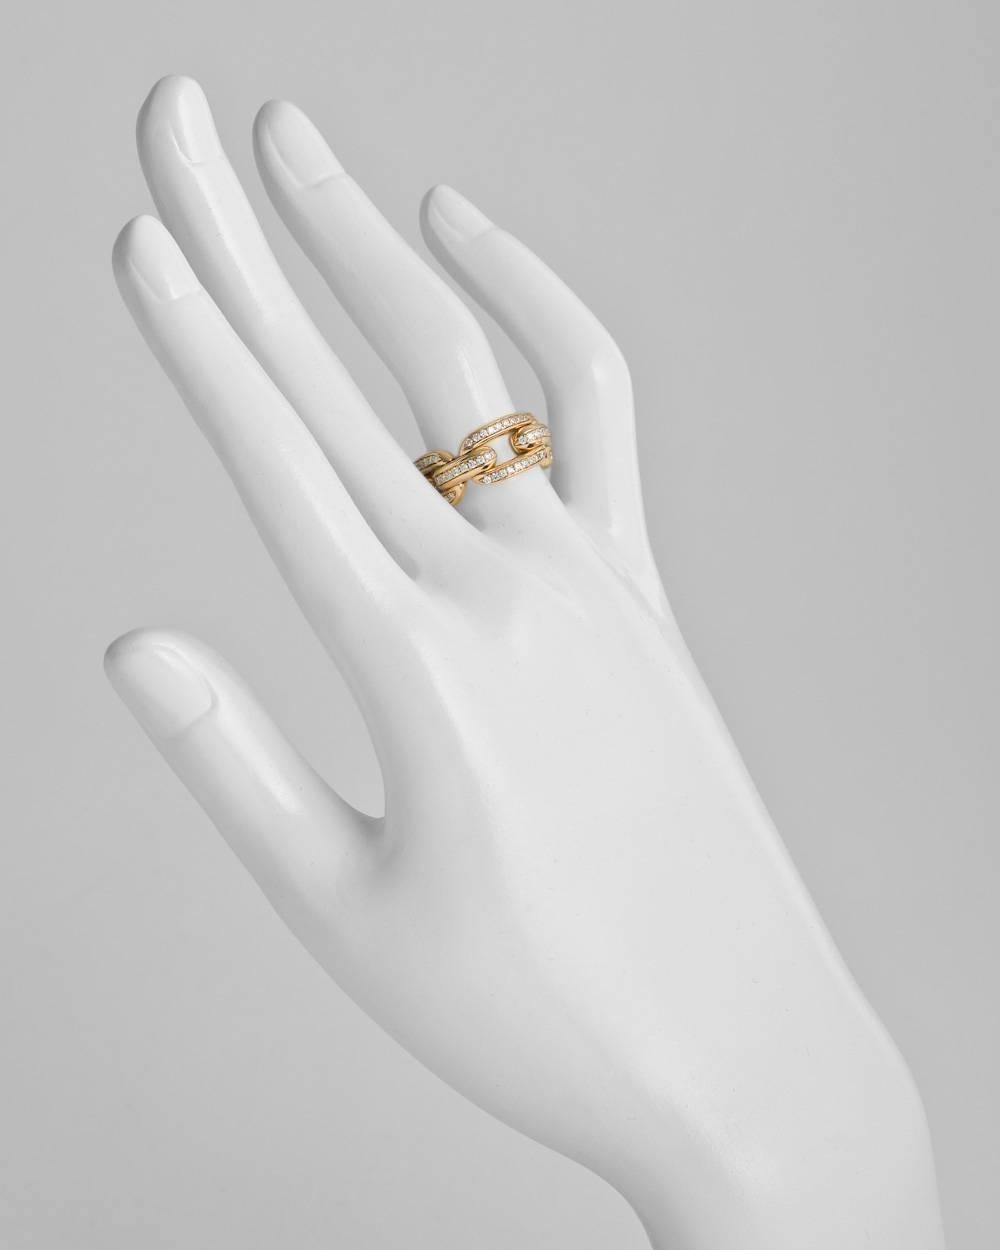 Ralph Lauren Ring - For Sale on 1stDibs | ralph lauren rings, ralph lauren  engagement rings, polo ralph lauren ring